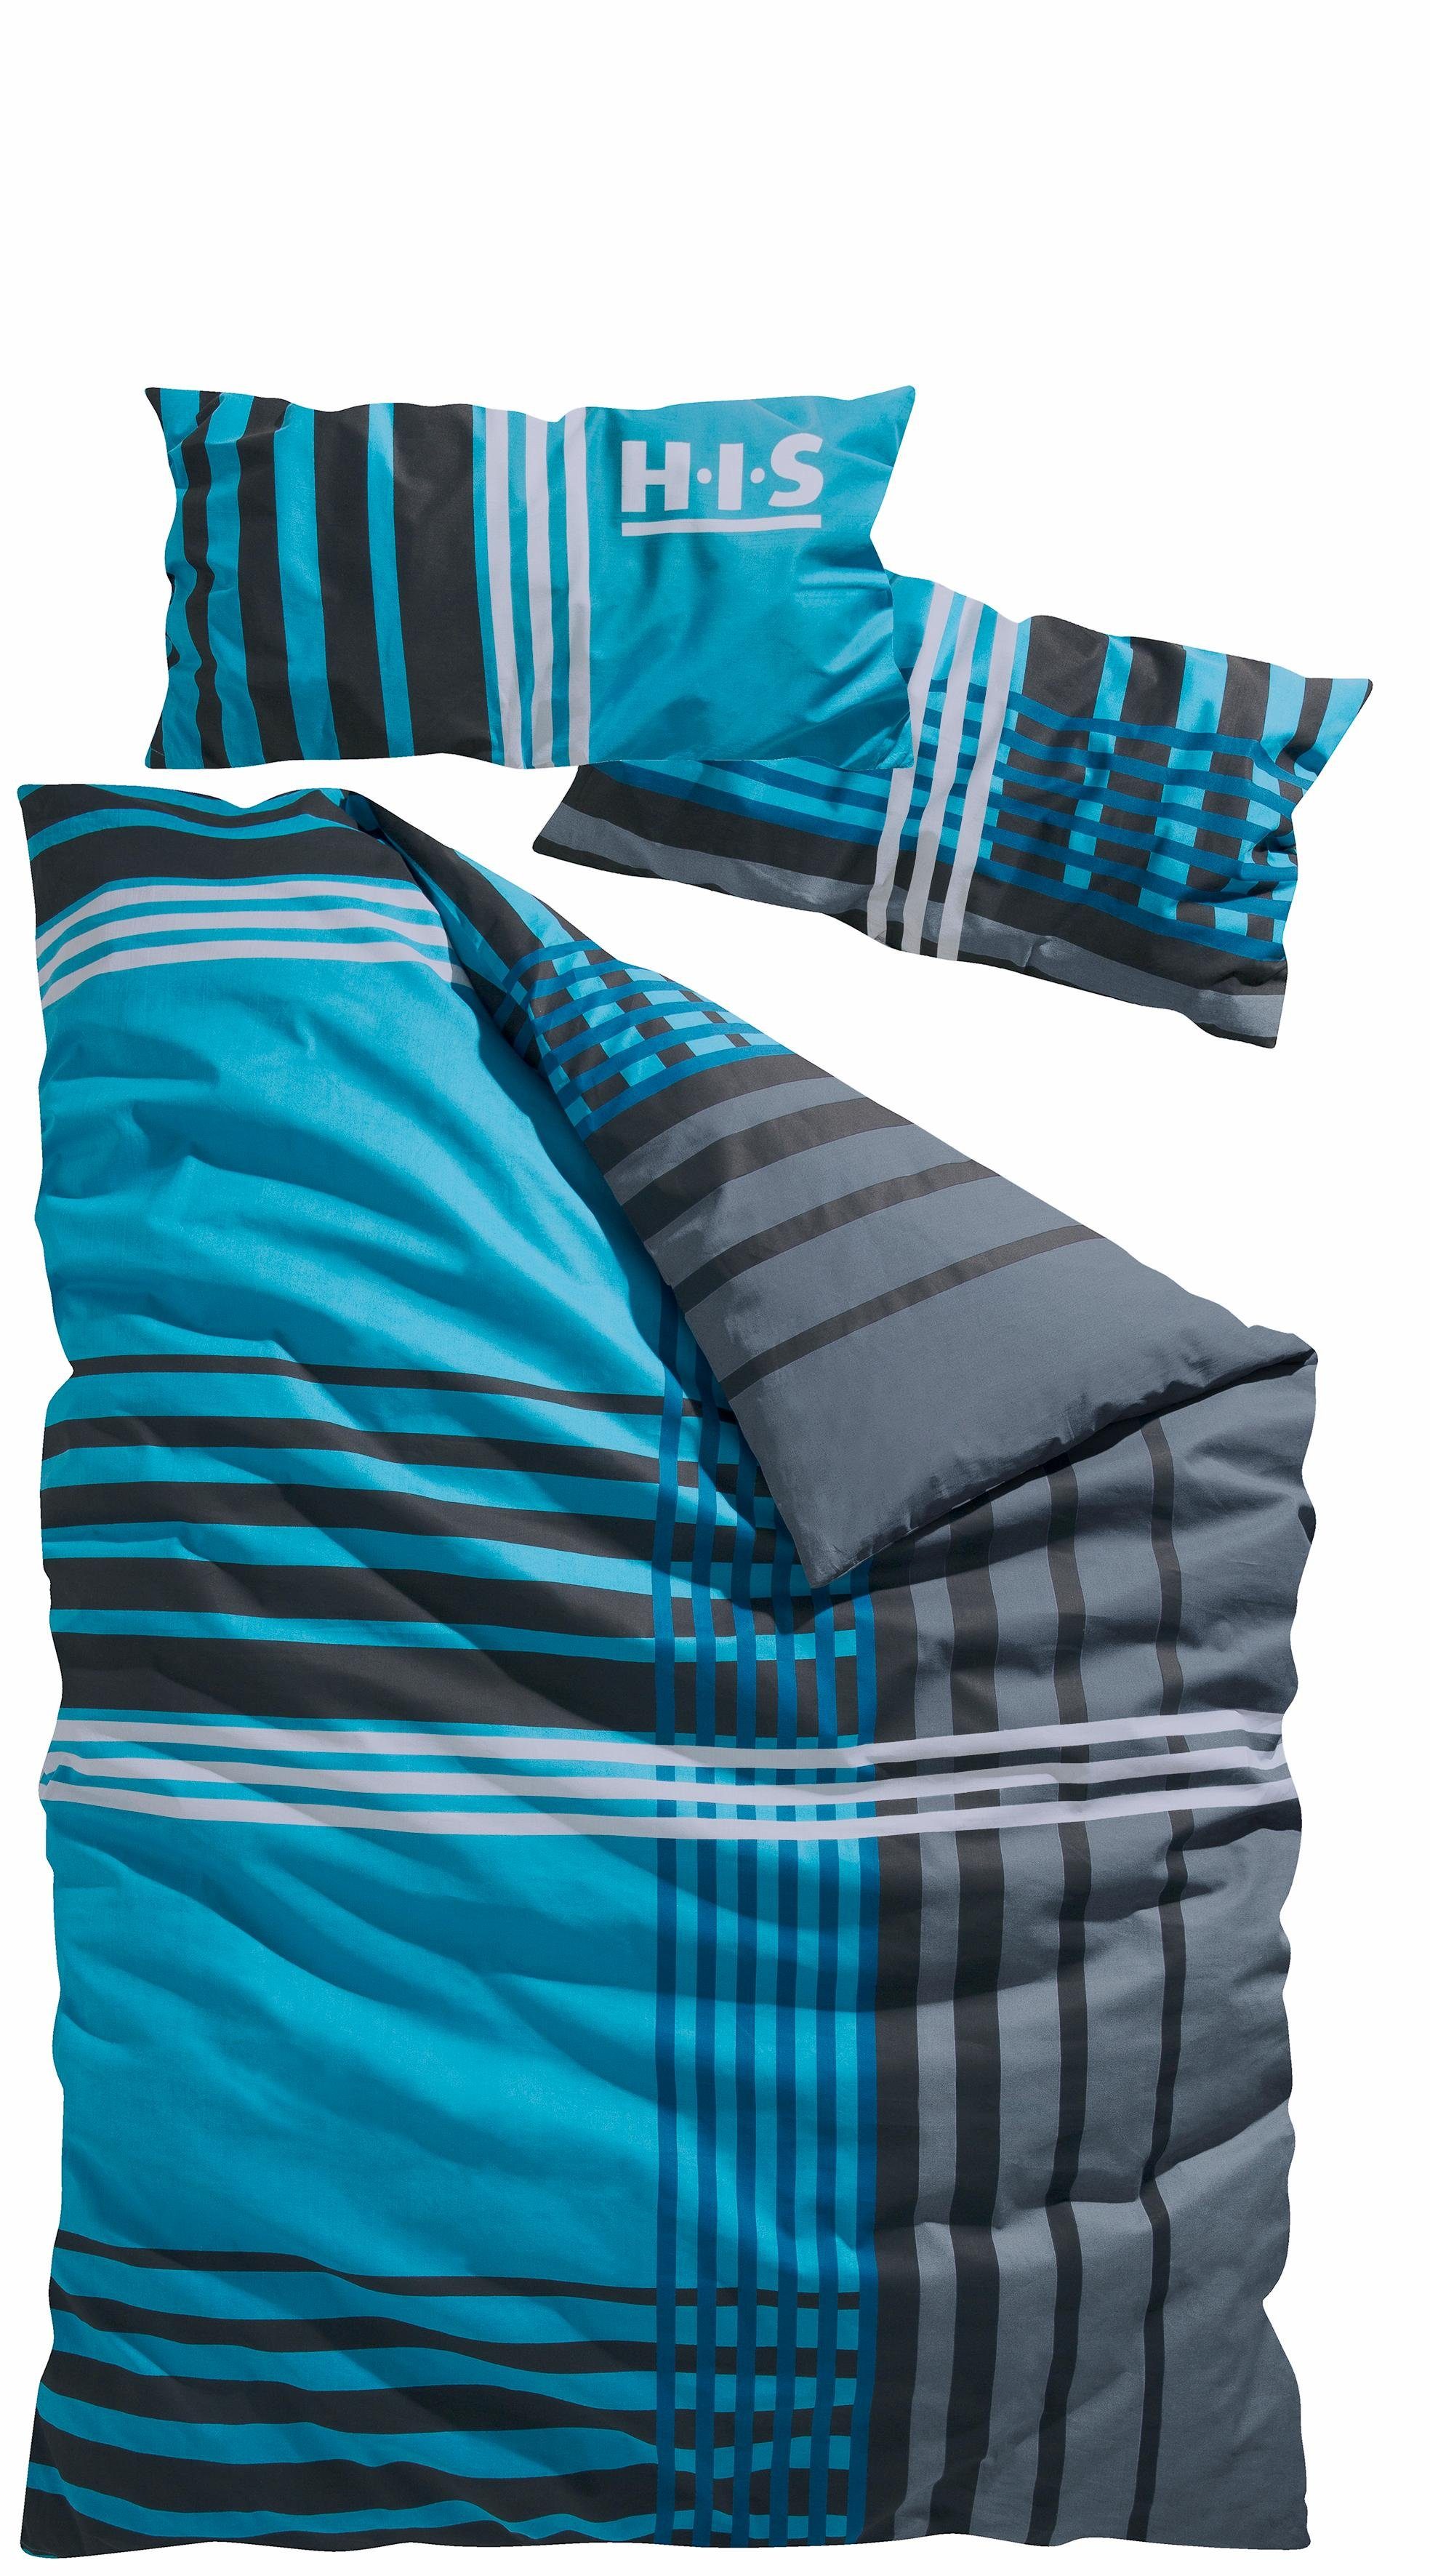 Bettwäsche Philip in Gr. 135x200 aus Renforcé, teilig, Baumwolle, H.I.S, sportliche Bettwäsche oder 2 155x220 cm, blau kariert